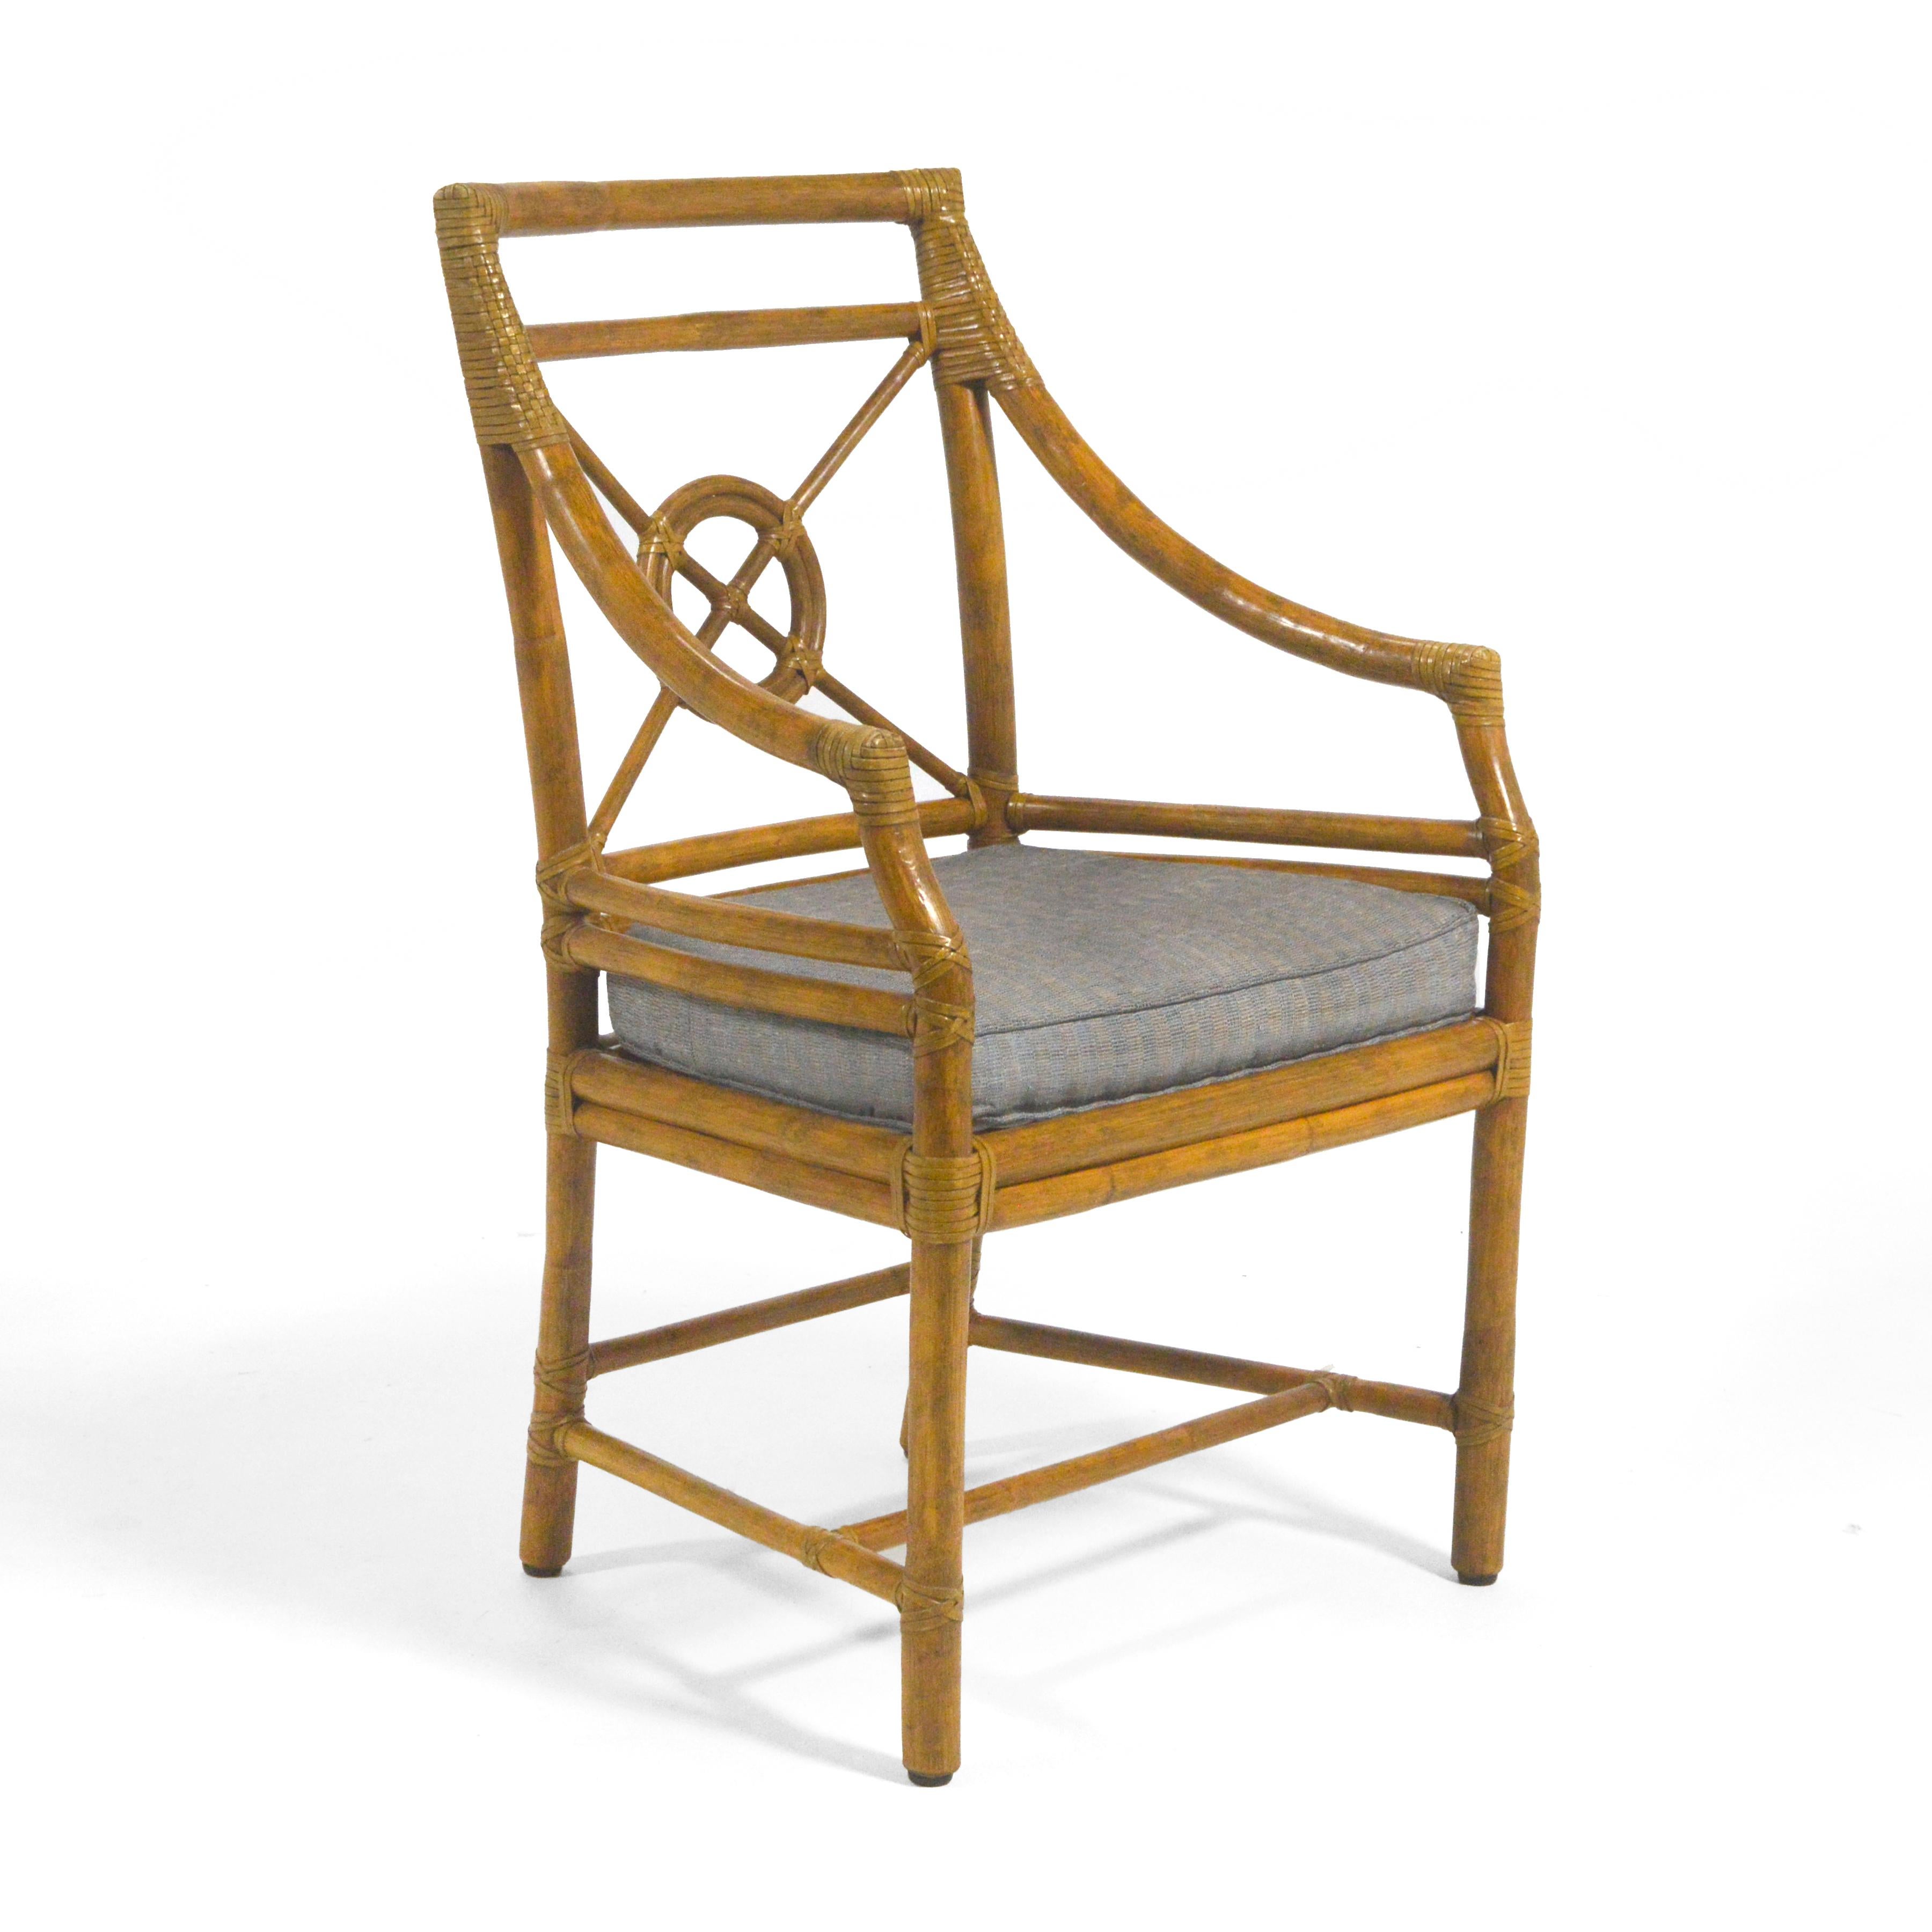 Elinor McGuire entwarf diesen Beistellstuhl des Modells M-59 für McGuire of San Fransisco, das Unternehmen, das sie zusammen mit ihrem Mann John gründete. Ursprünglich als 